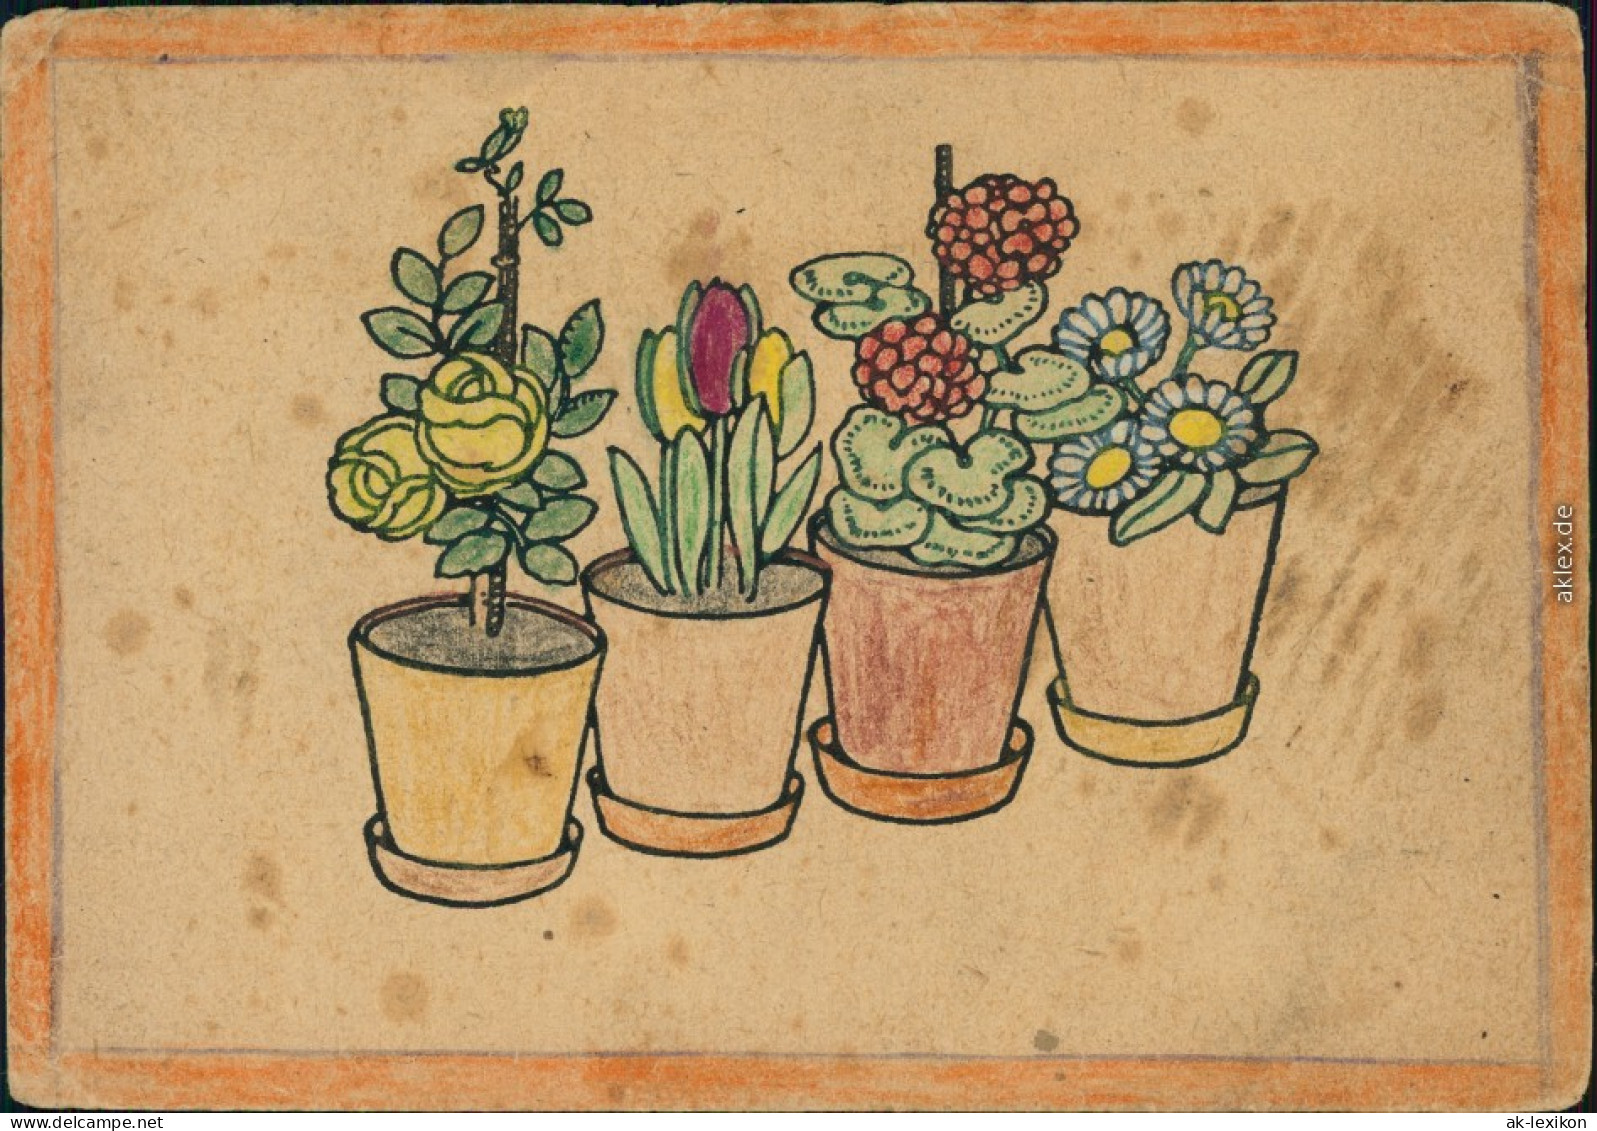 Ausmalpostkarten Nr.1 Und 2 Hahn Ostereier Schneeglöckchen Blumentöpfe 1947 - 1900-1949